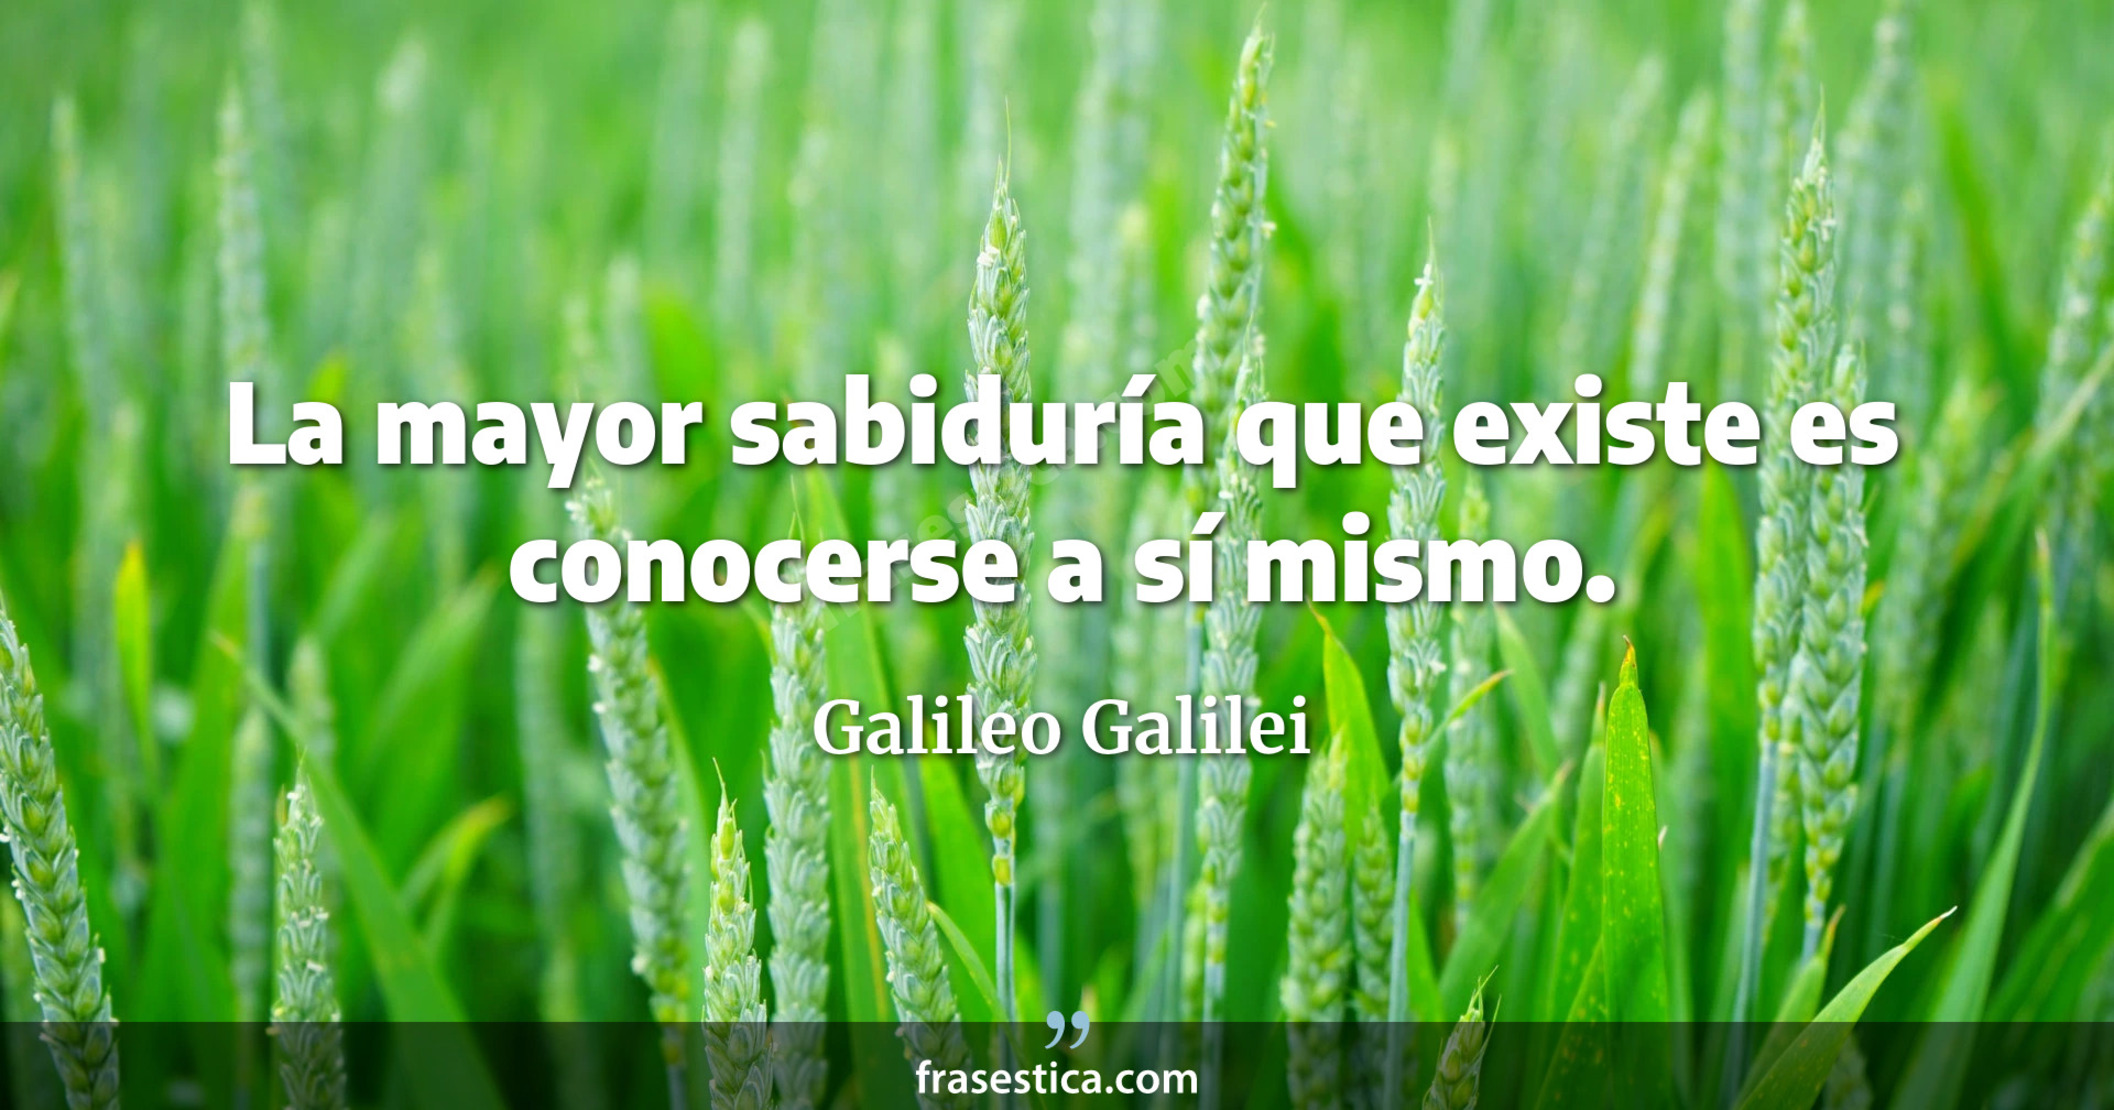 La mayor sabiduría que existe es conocerse a sí mismo. - Galileo Galilei